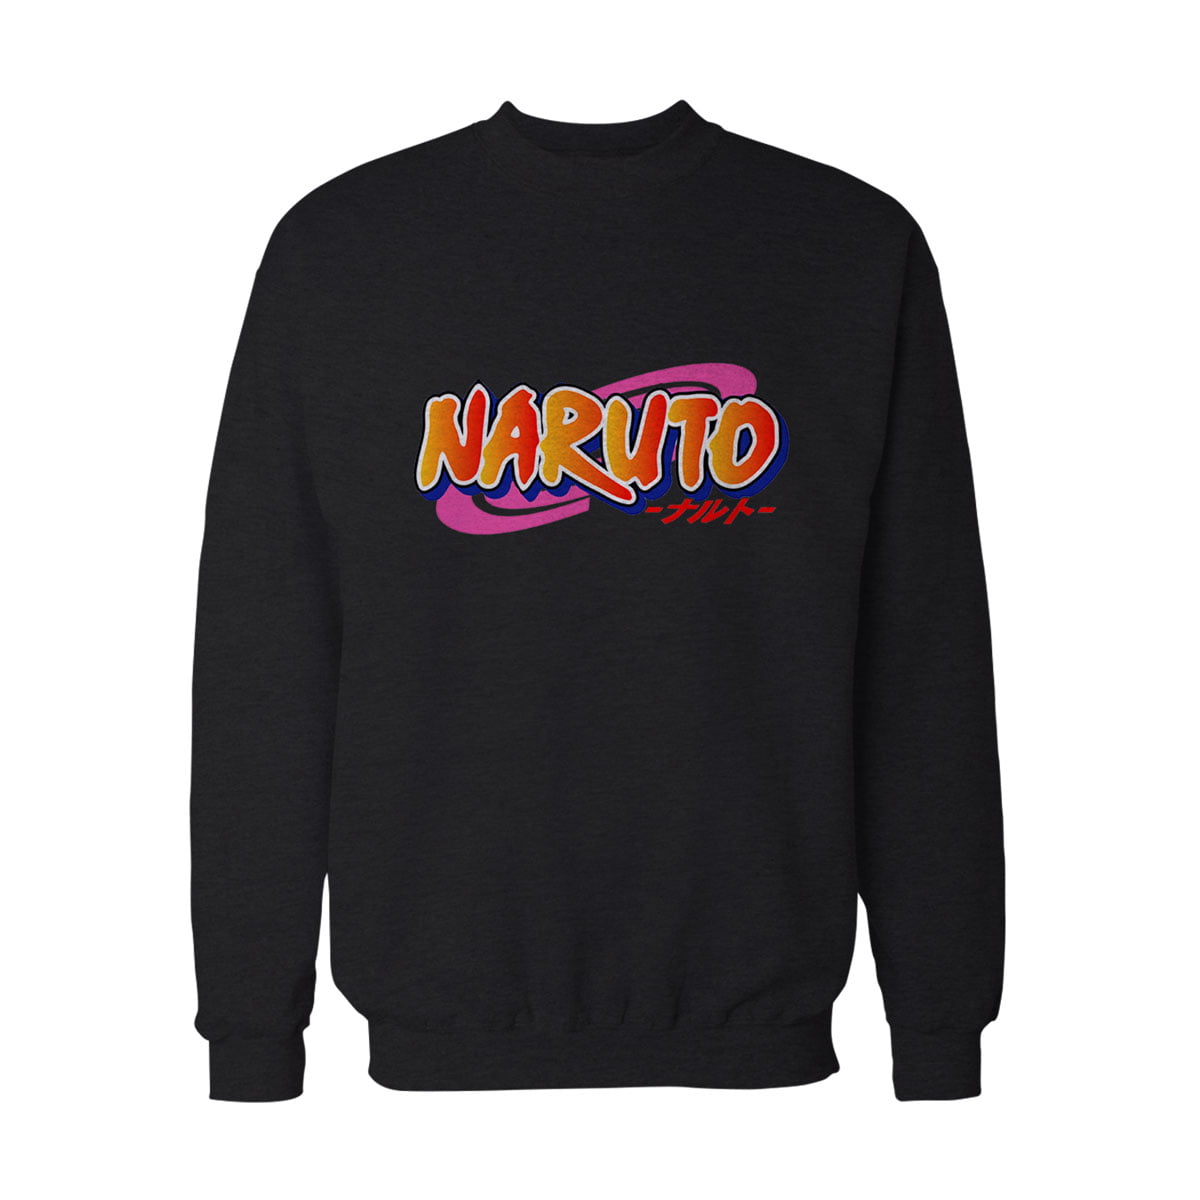 Naruto uzumaki logo no3 sweatshirt s - naruto uzumaki logo baskılı sweatshirt - figurex